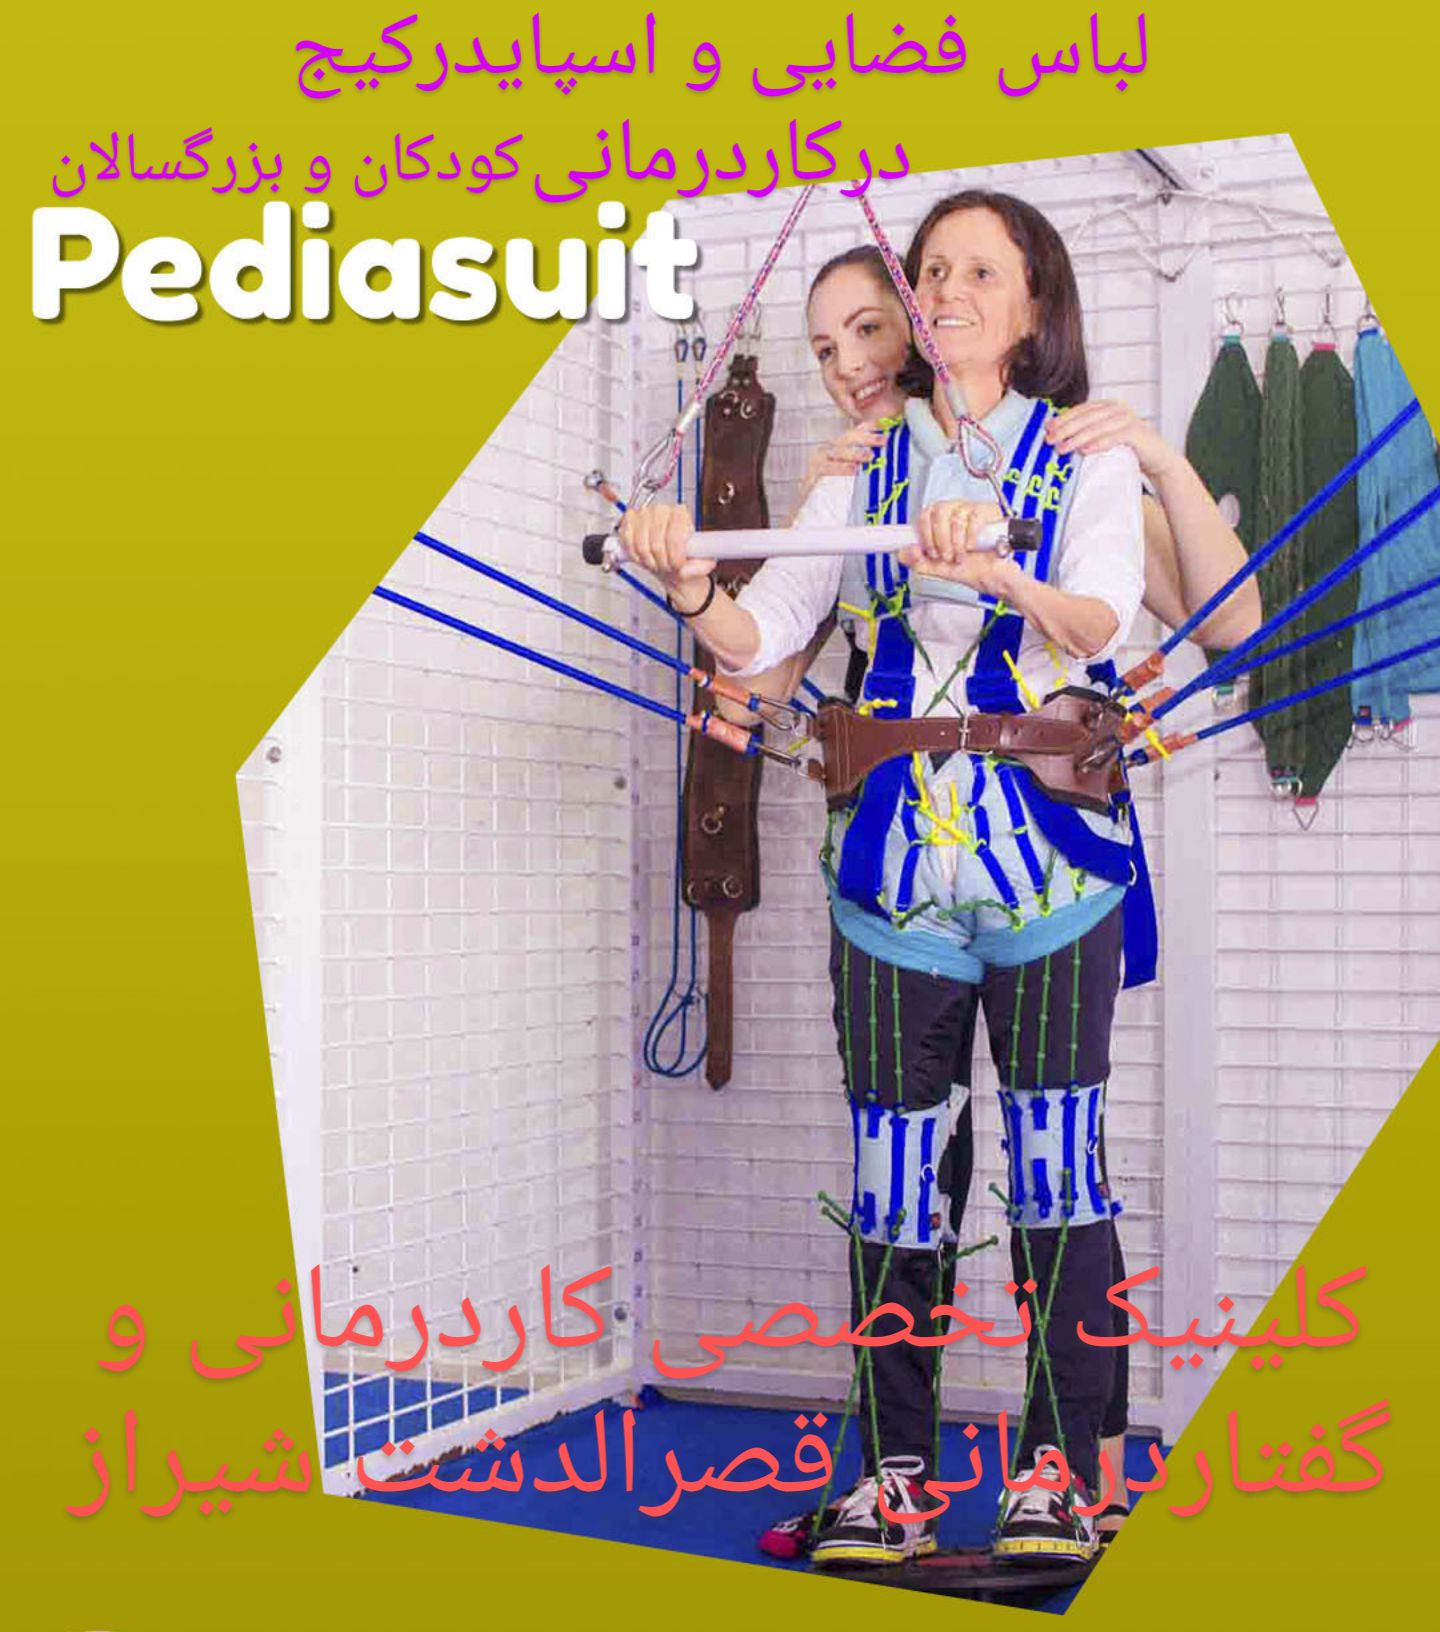 لباس فضایی و اسپایدرکیج در کاردرمانی کودکان و بزرگسالان در شیراز_مجهزترین کاردرمانی شیراز